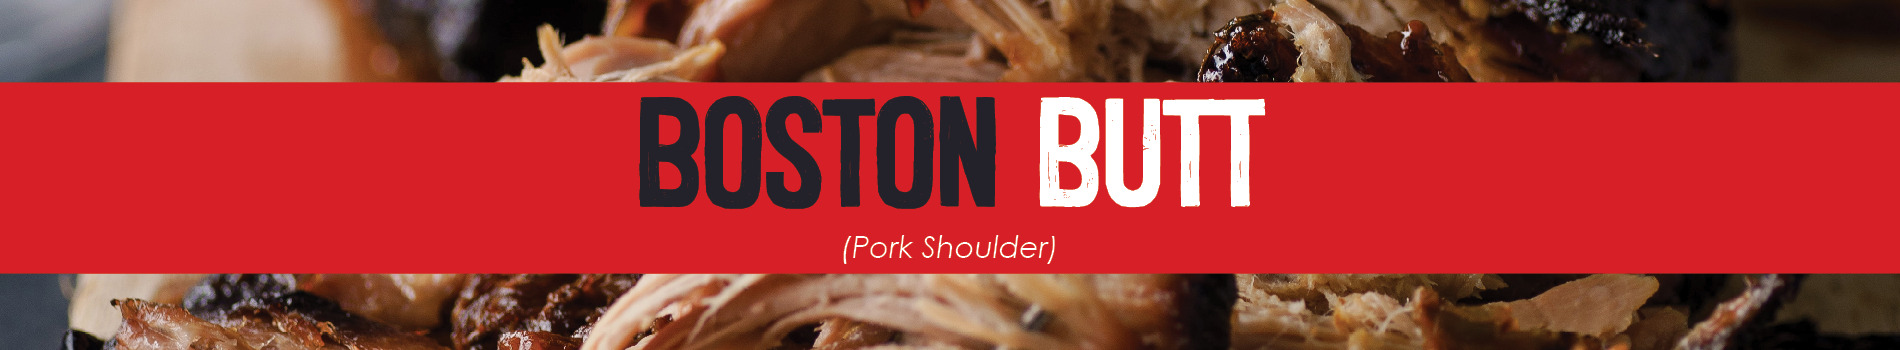 Boston Butt (Pork Shoulder)